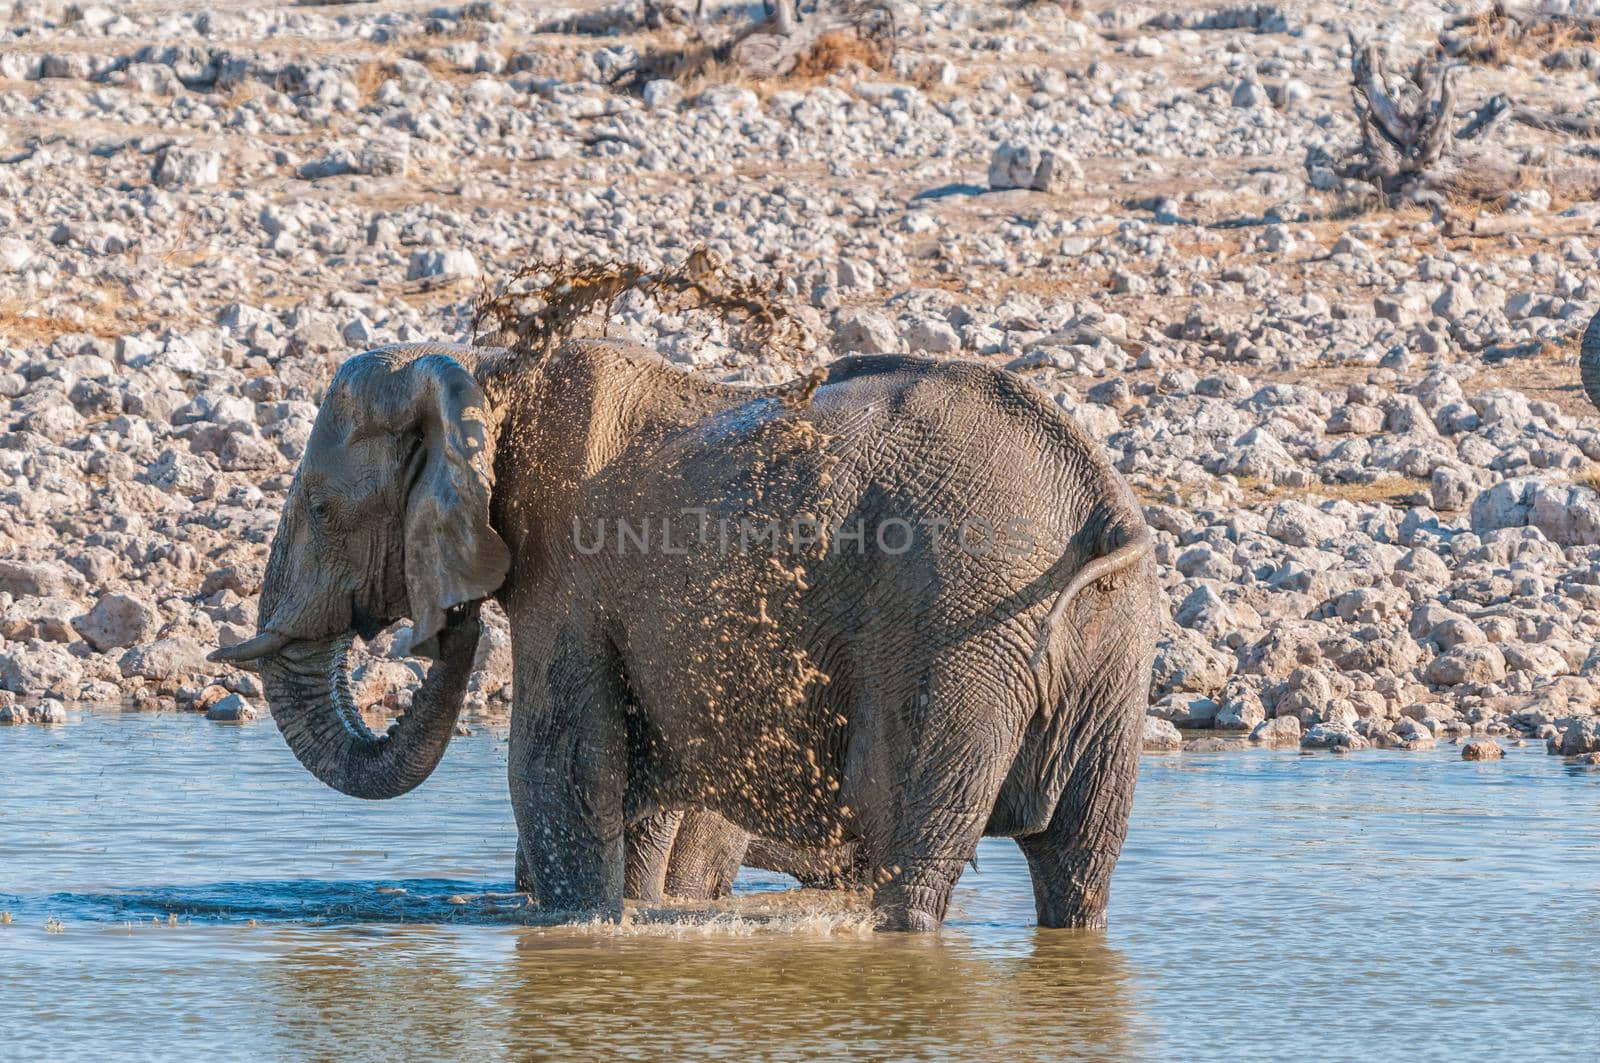 An elephant taking a mud bath in a waterhole